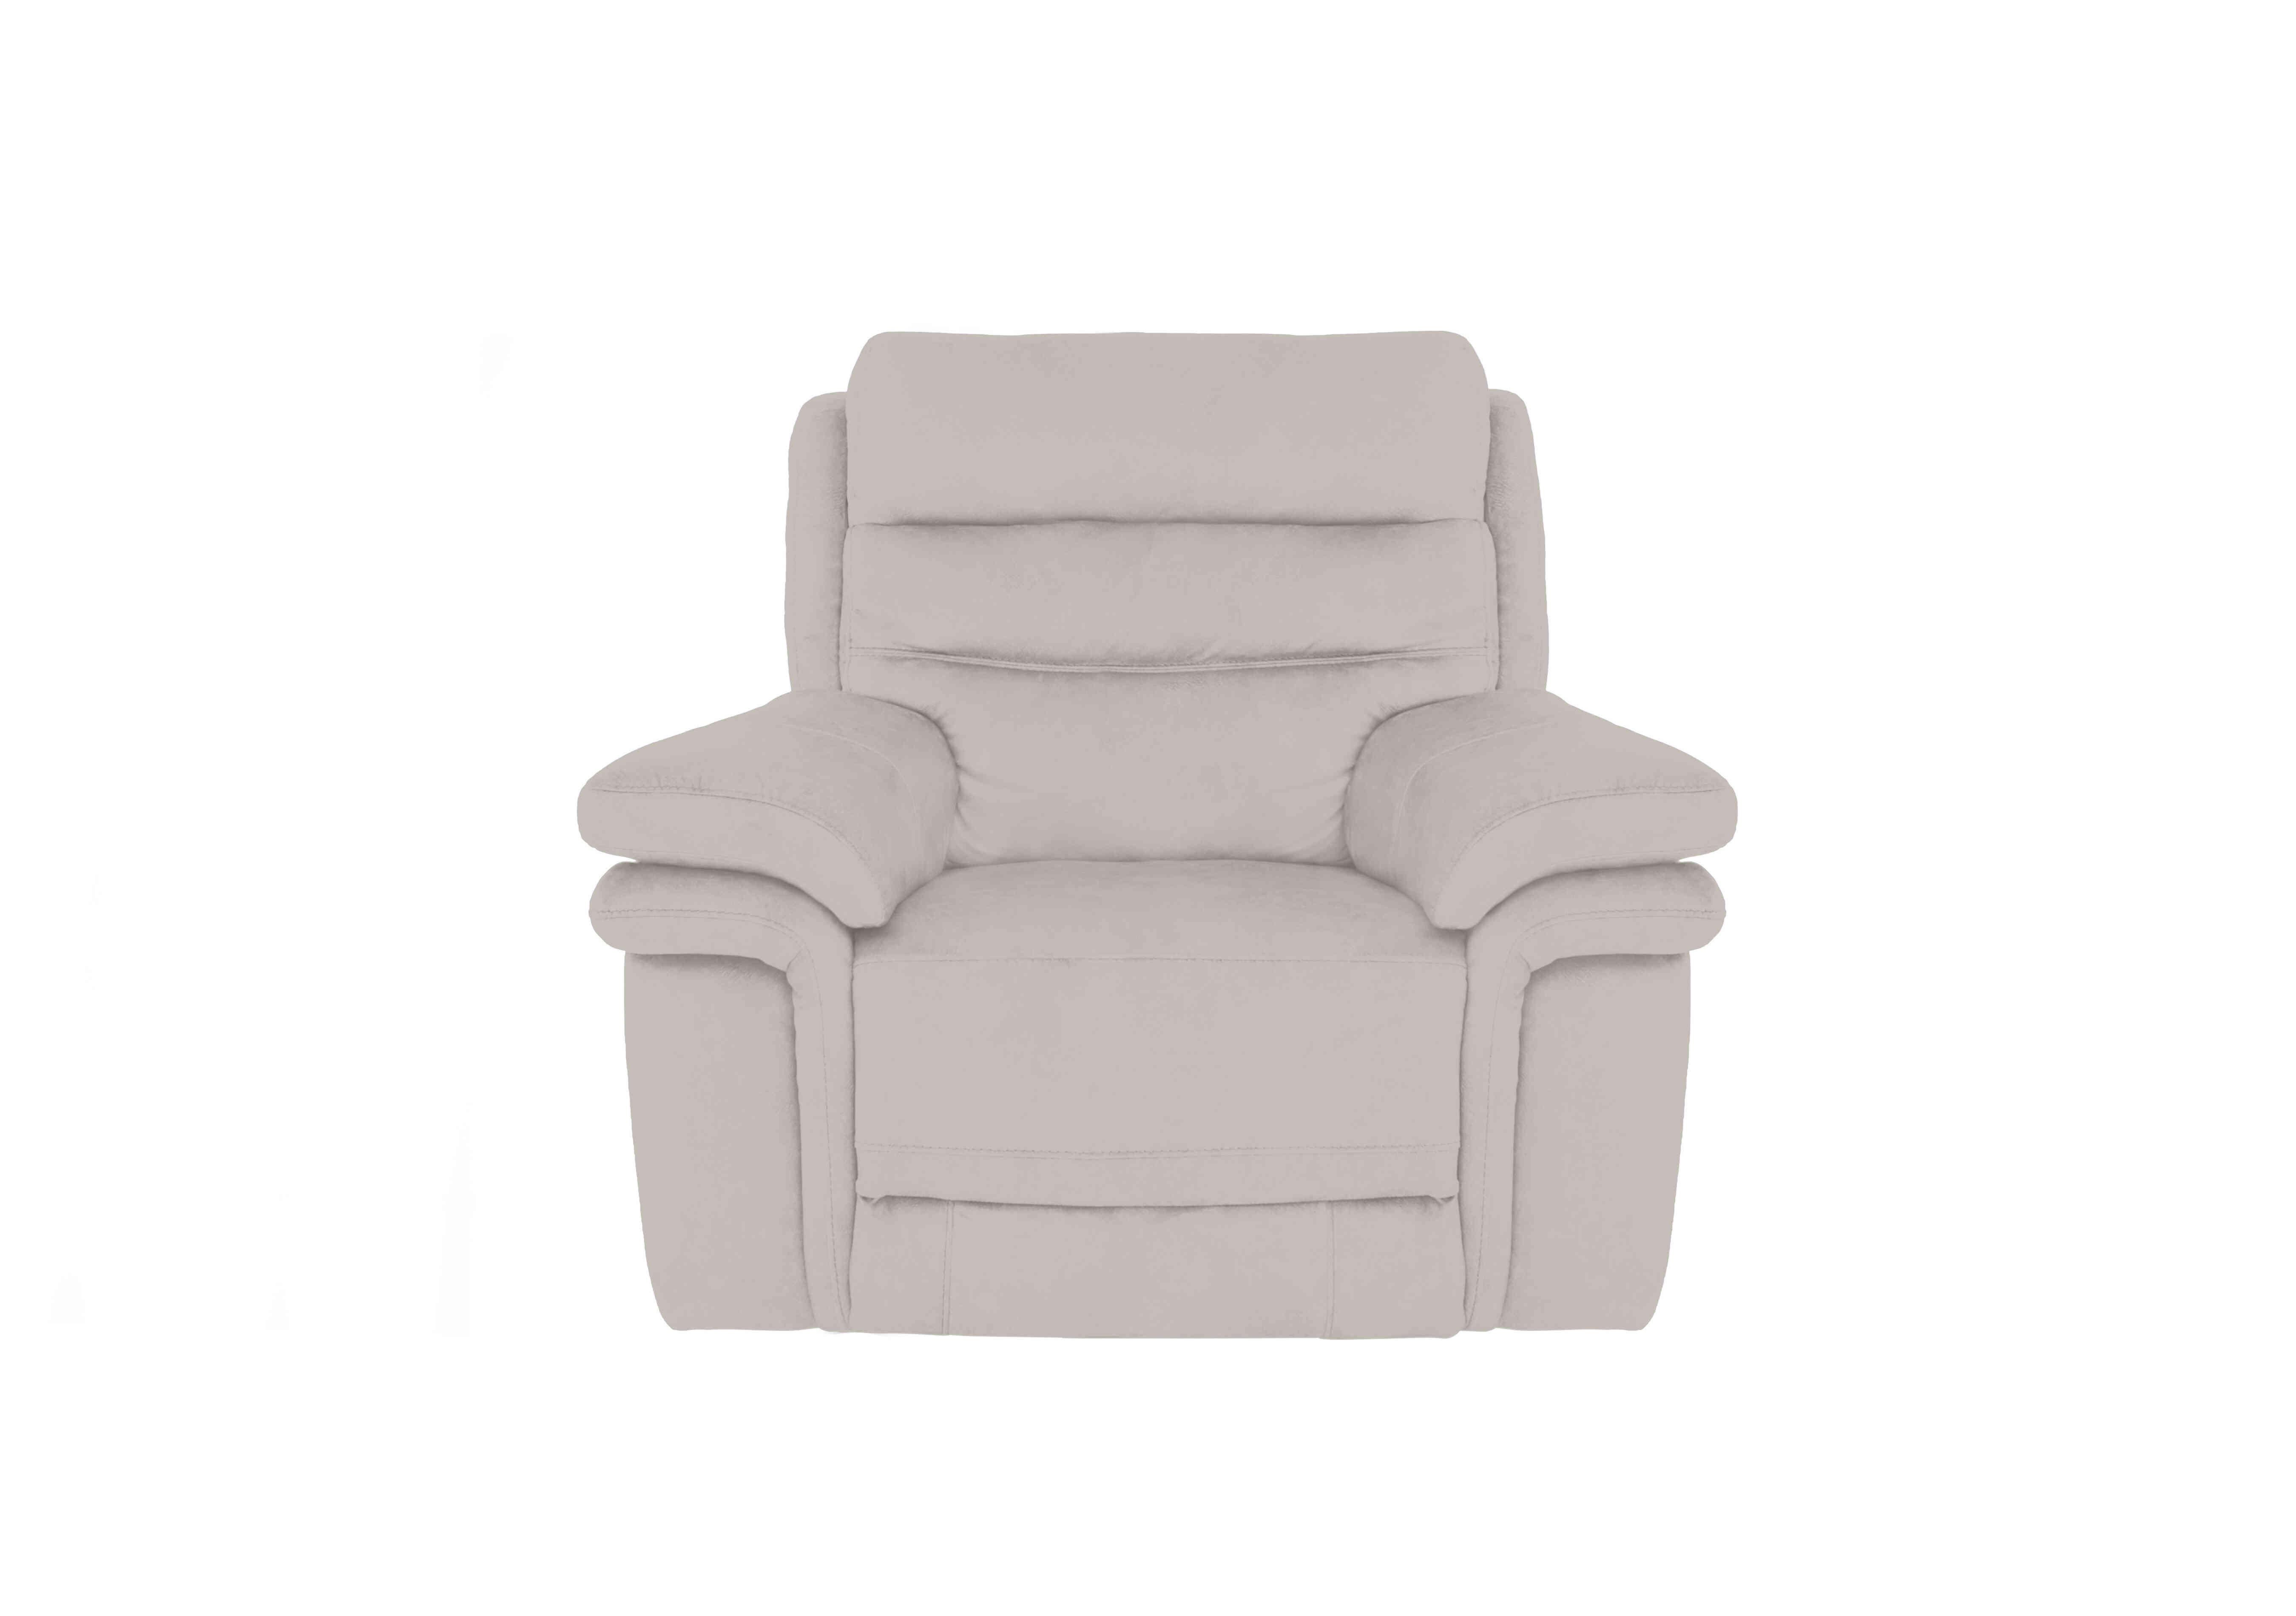 Berlin Fabric Chair in Velvet White Vv-0307 on Furniture Village